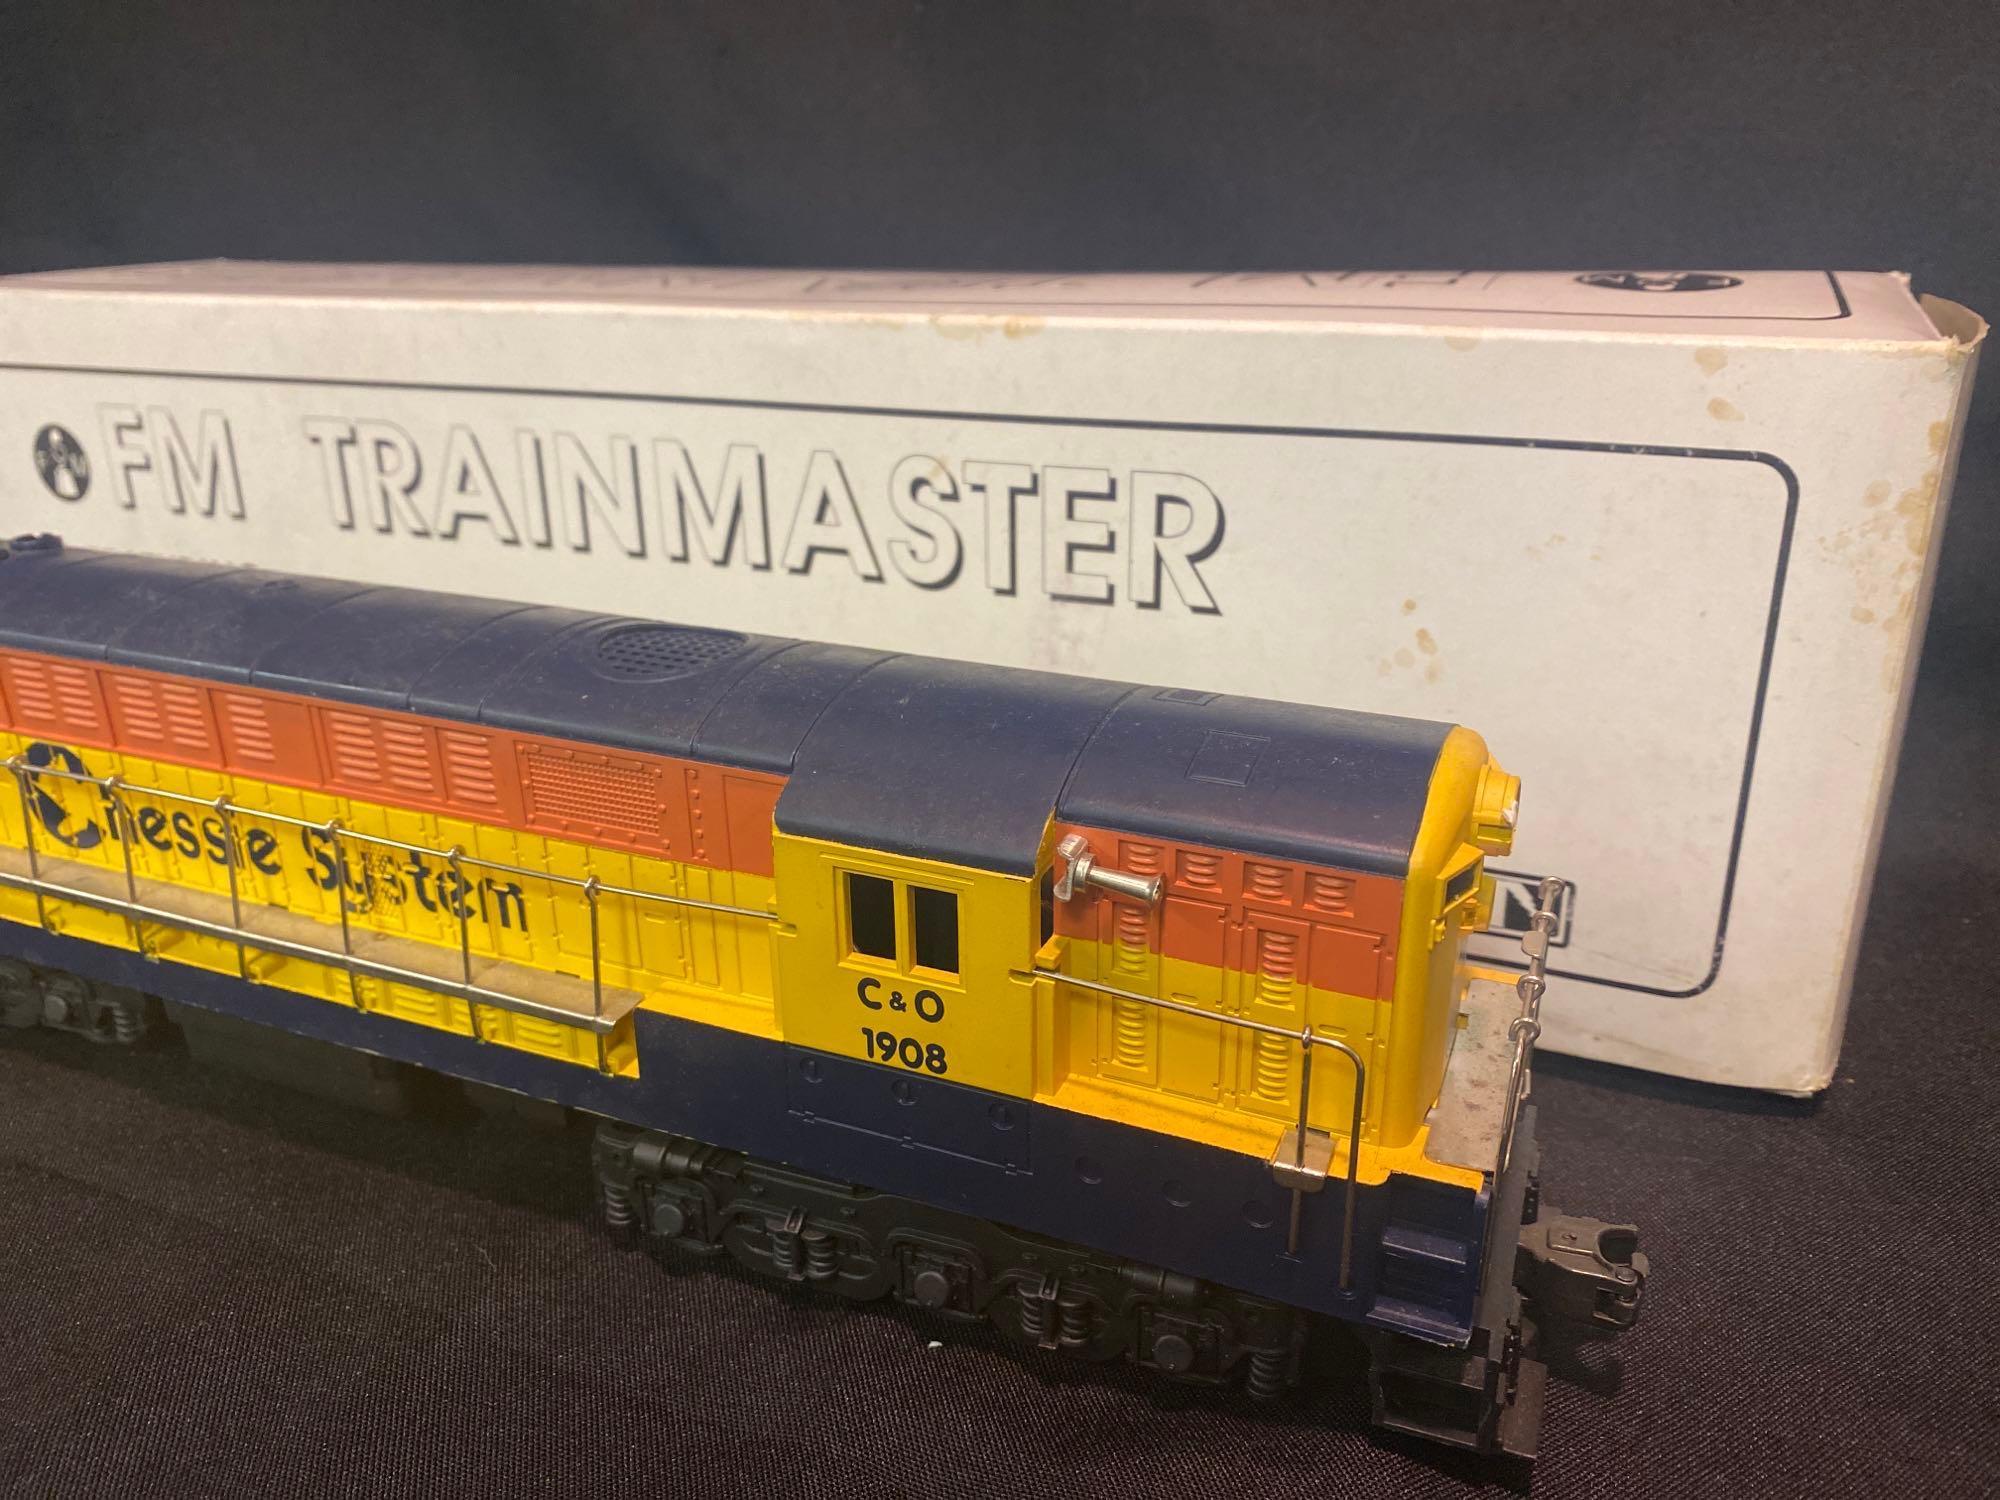 FM Trainmaster Chessie System Diesel Locomotive